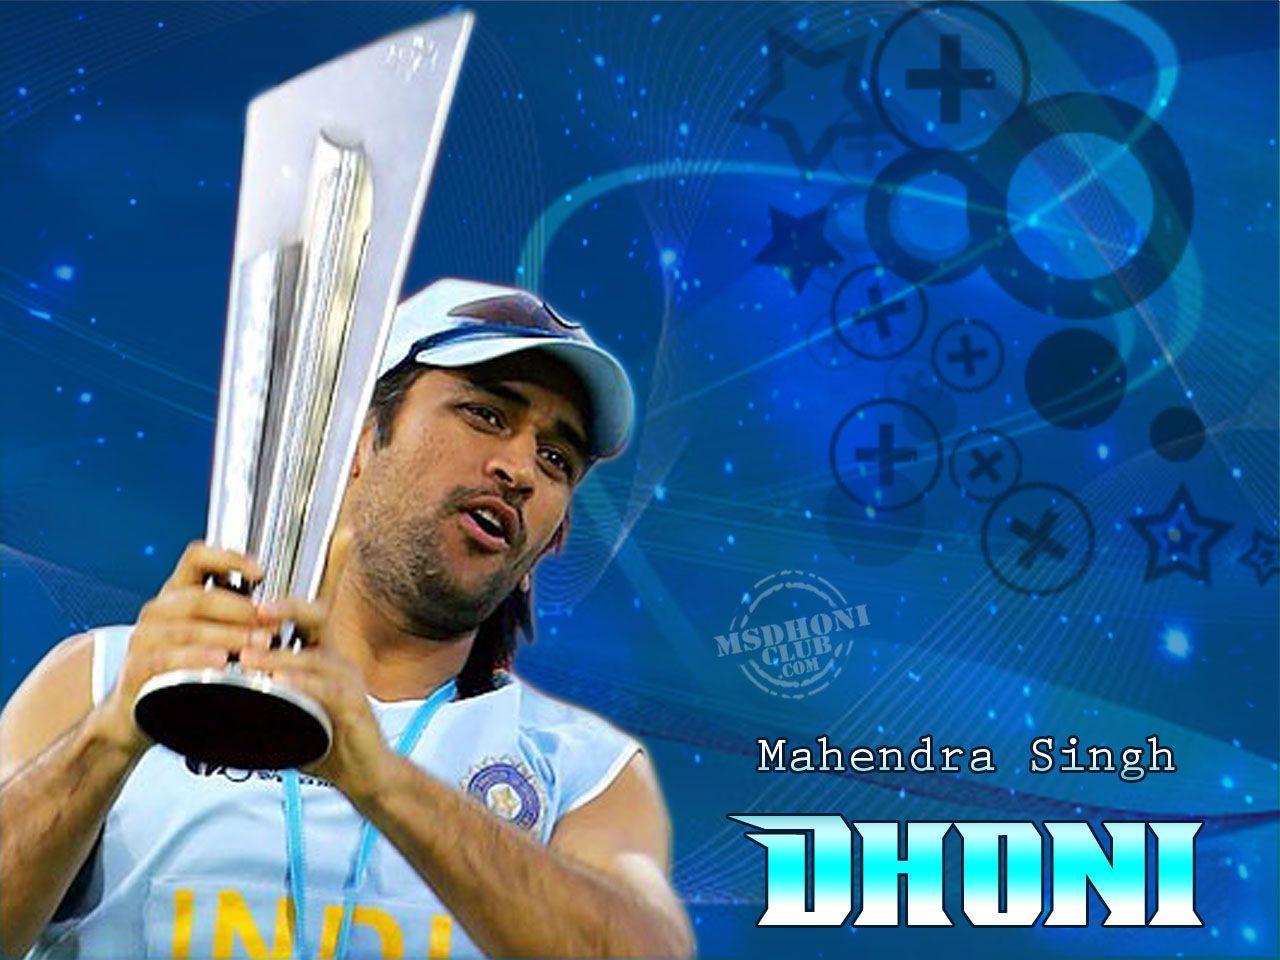 Dhoni Wallpaper. MS Dhoni Wallpaper. Cricket Player Dhoni Wallpaper